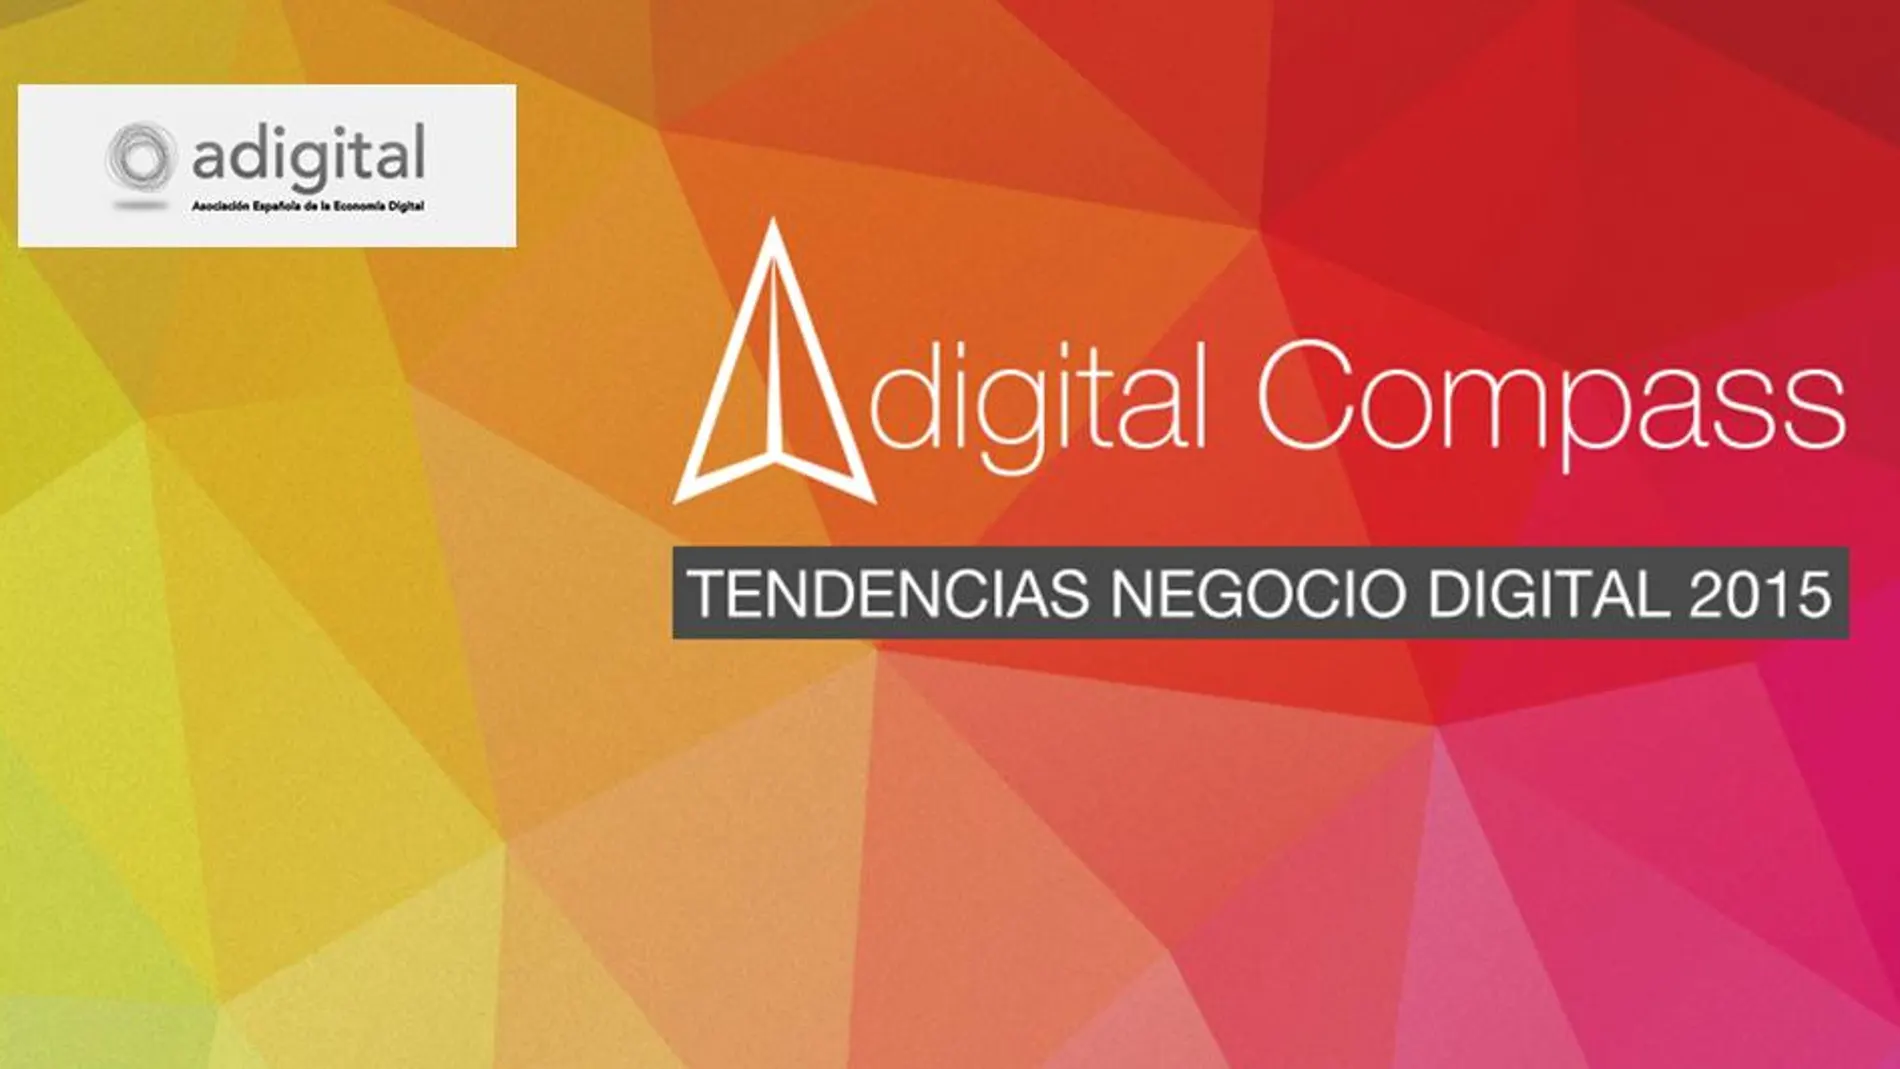 El presupuesto para el área digital de las empresas españolas crecerá por encima del 10% en 2015.